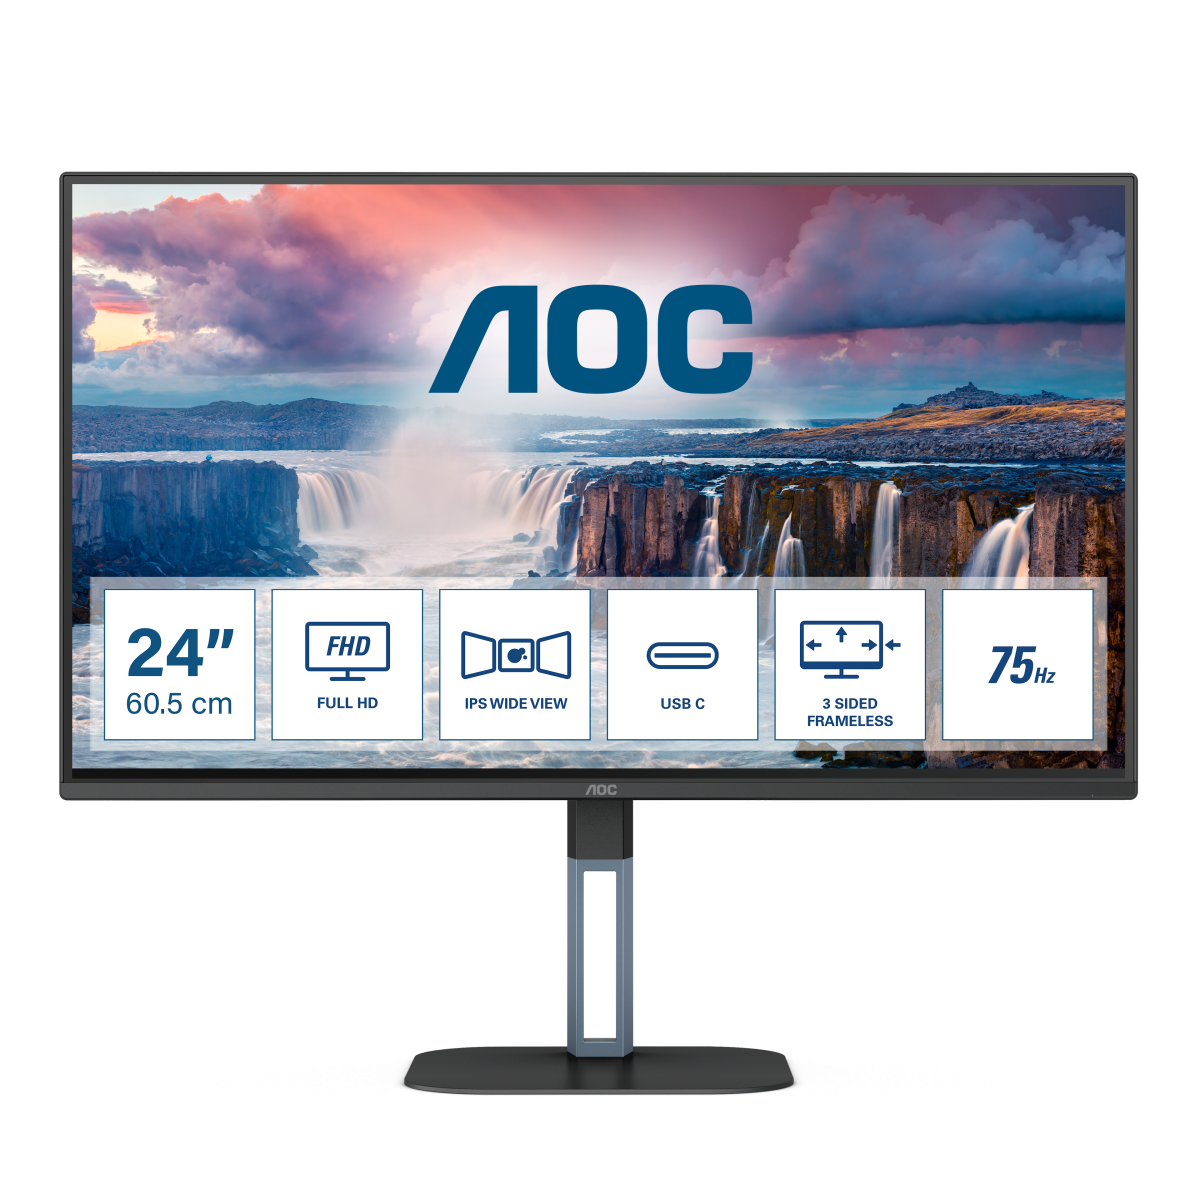 Монитор для дома и офиса AOC 24V5CE/BK в официальном интернет магазине AGONBYAOC.ru (AOC Россия)